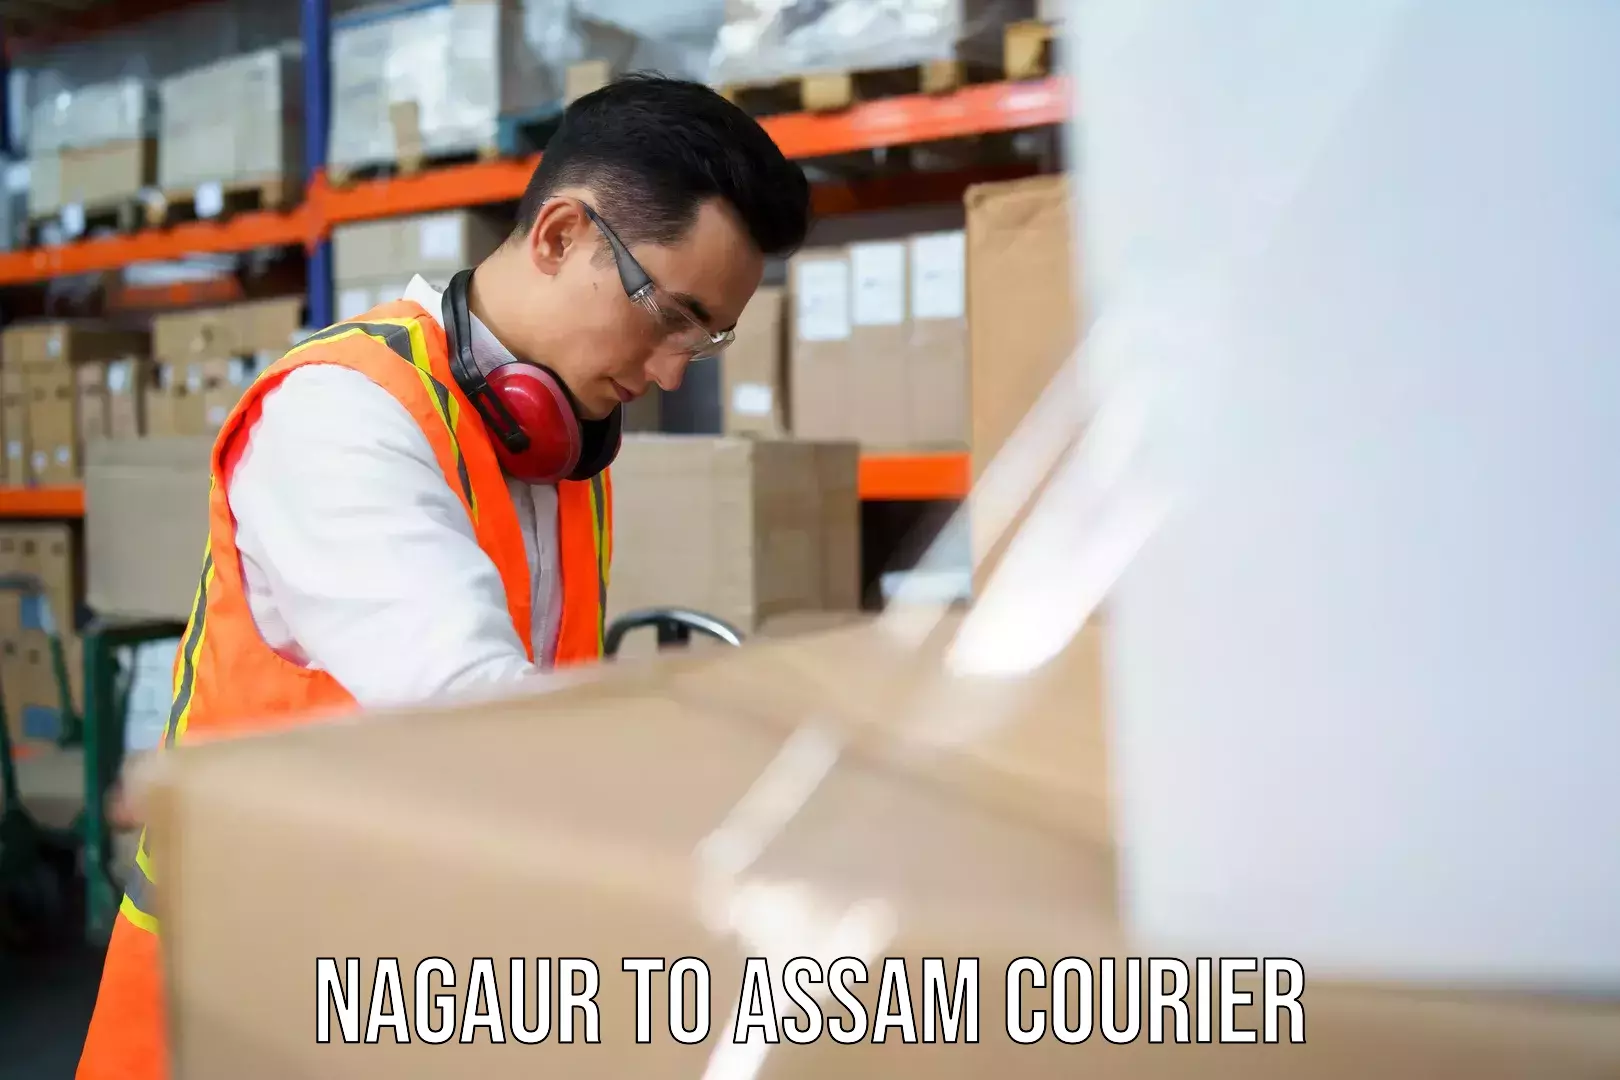 Nationwide shipping capabilities Nagaur to Nagaon